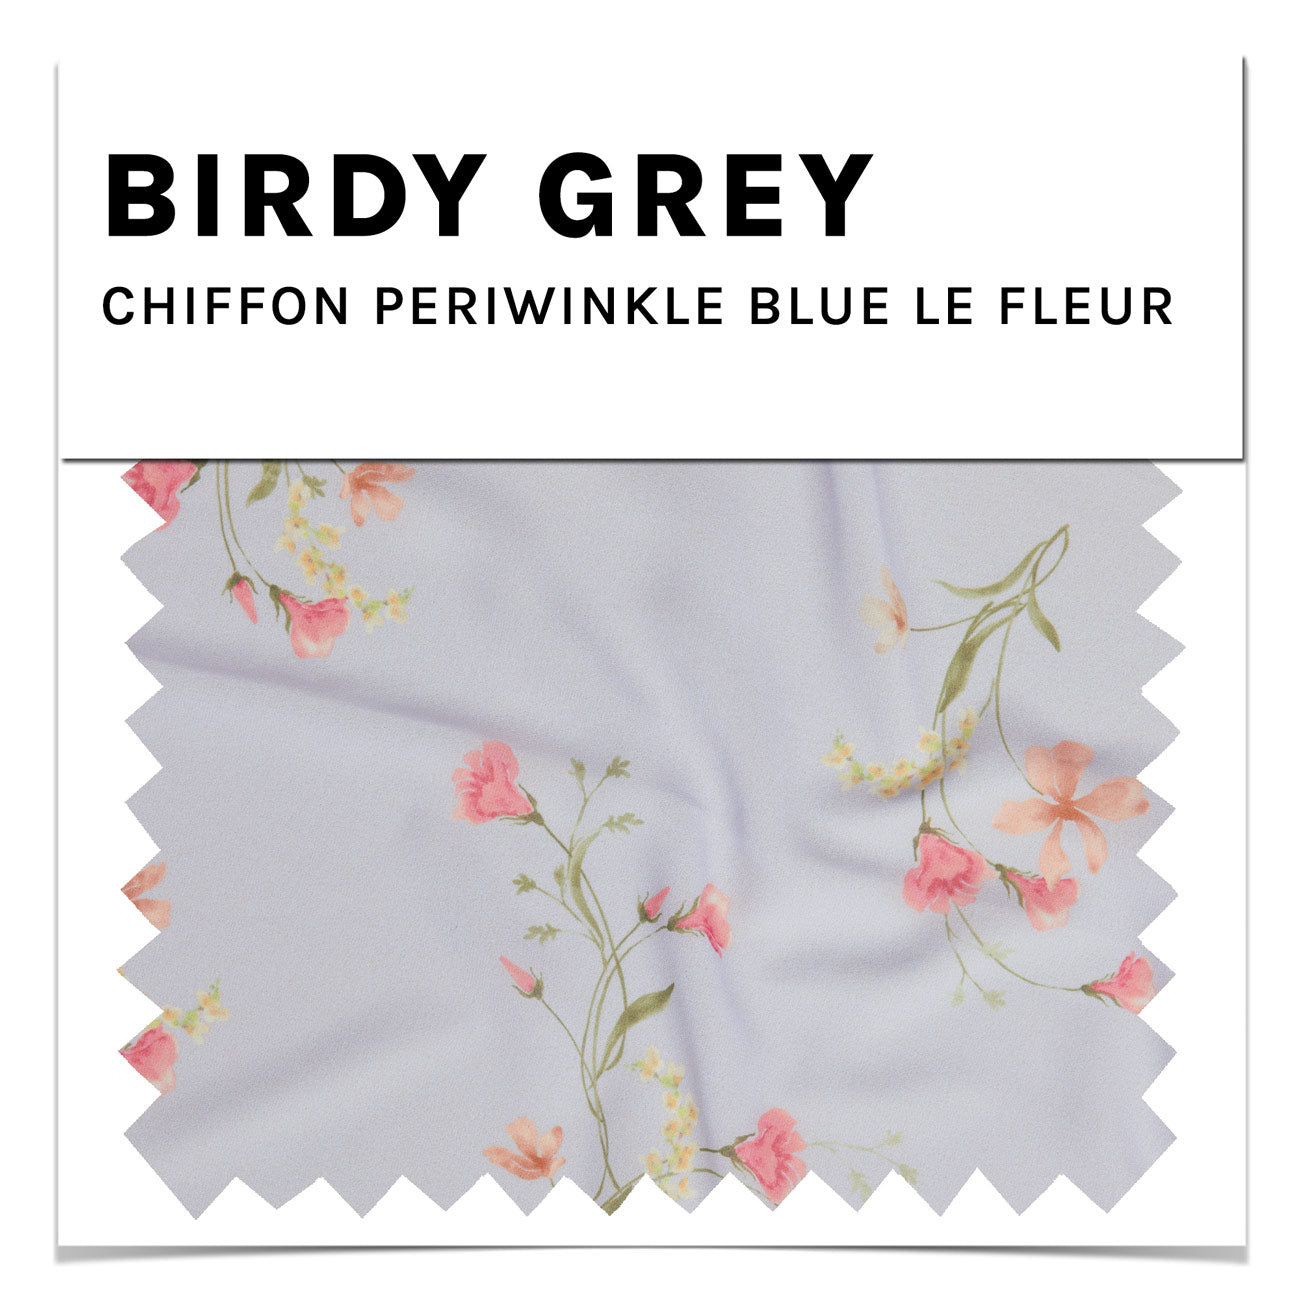 Periwinkle Blue Le Fleur Chiffon Swatch by Birdy Grey